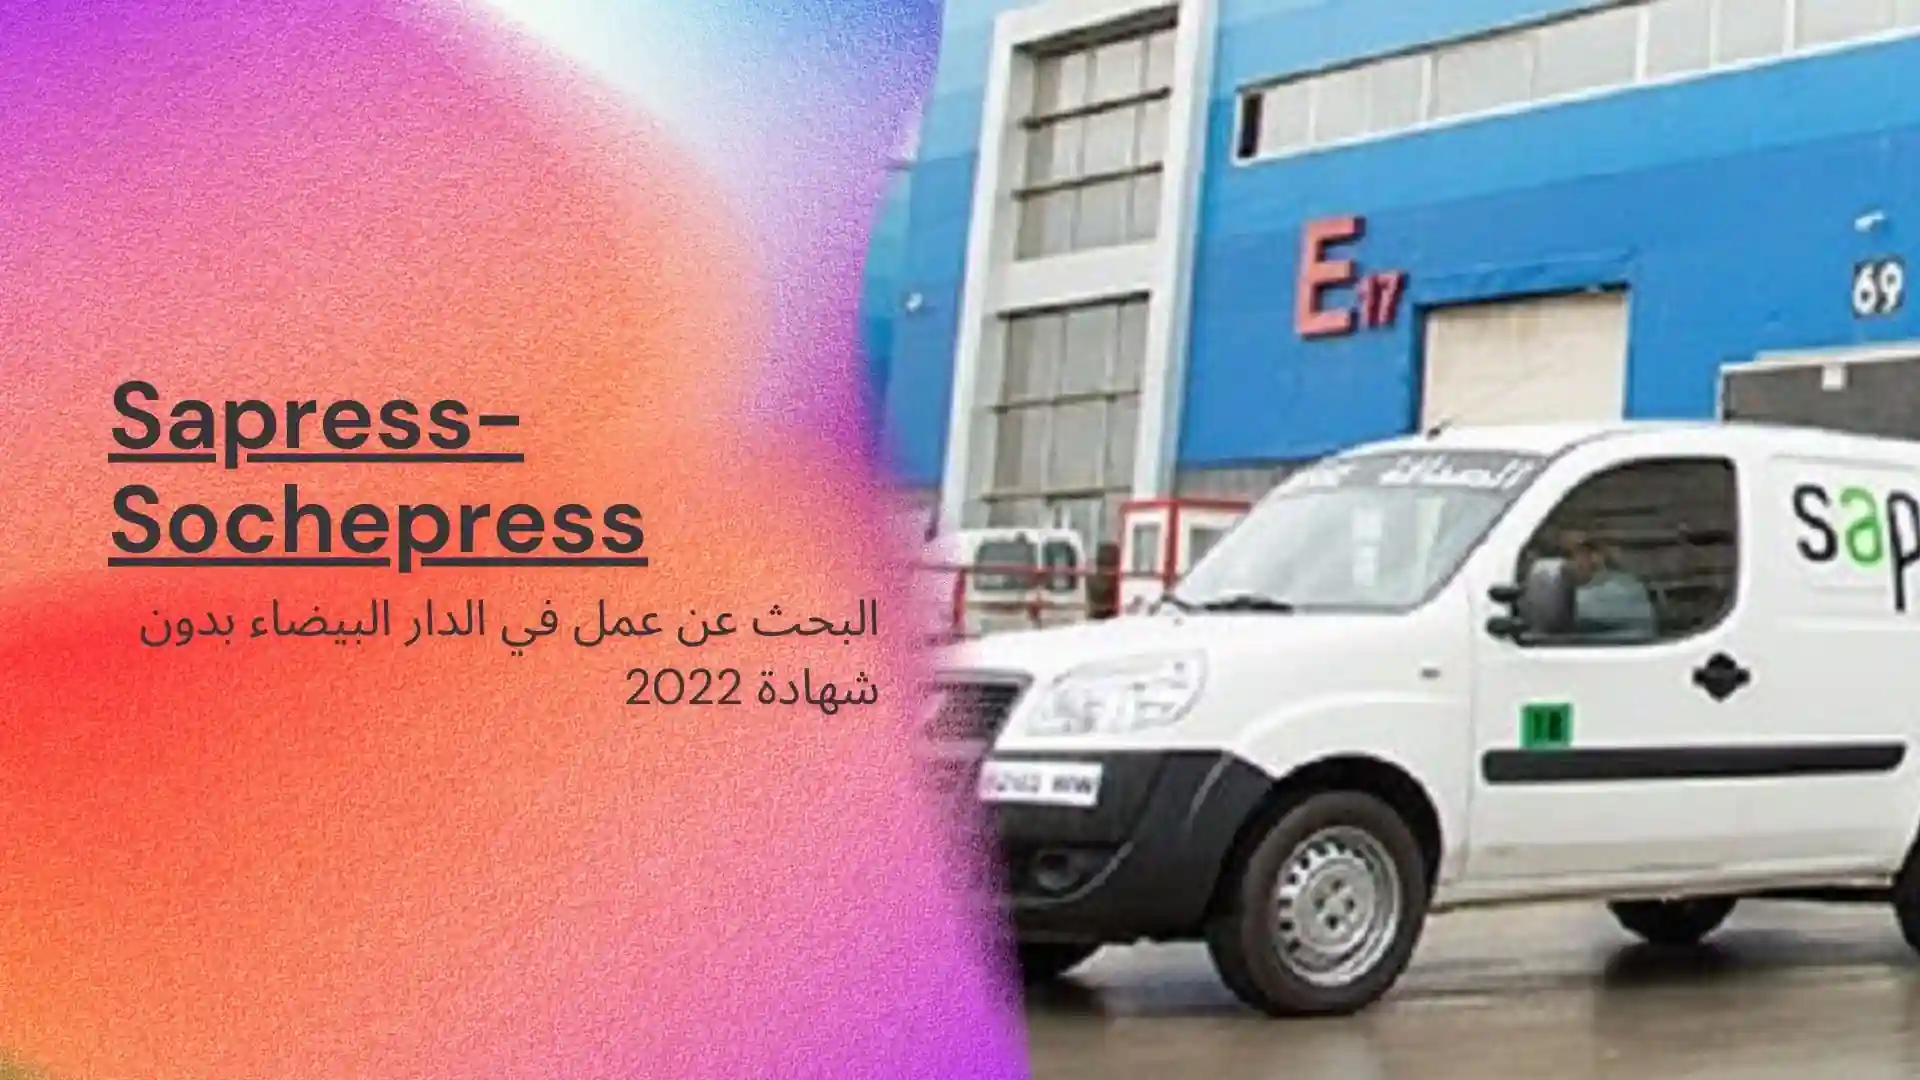 البحث عن عمل في الدار البيضاء بدون شهادة 2022 .. شركة Sapress-Sochepress